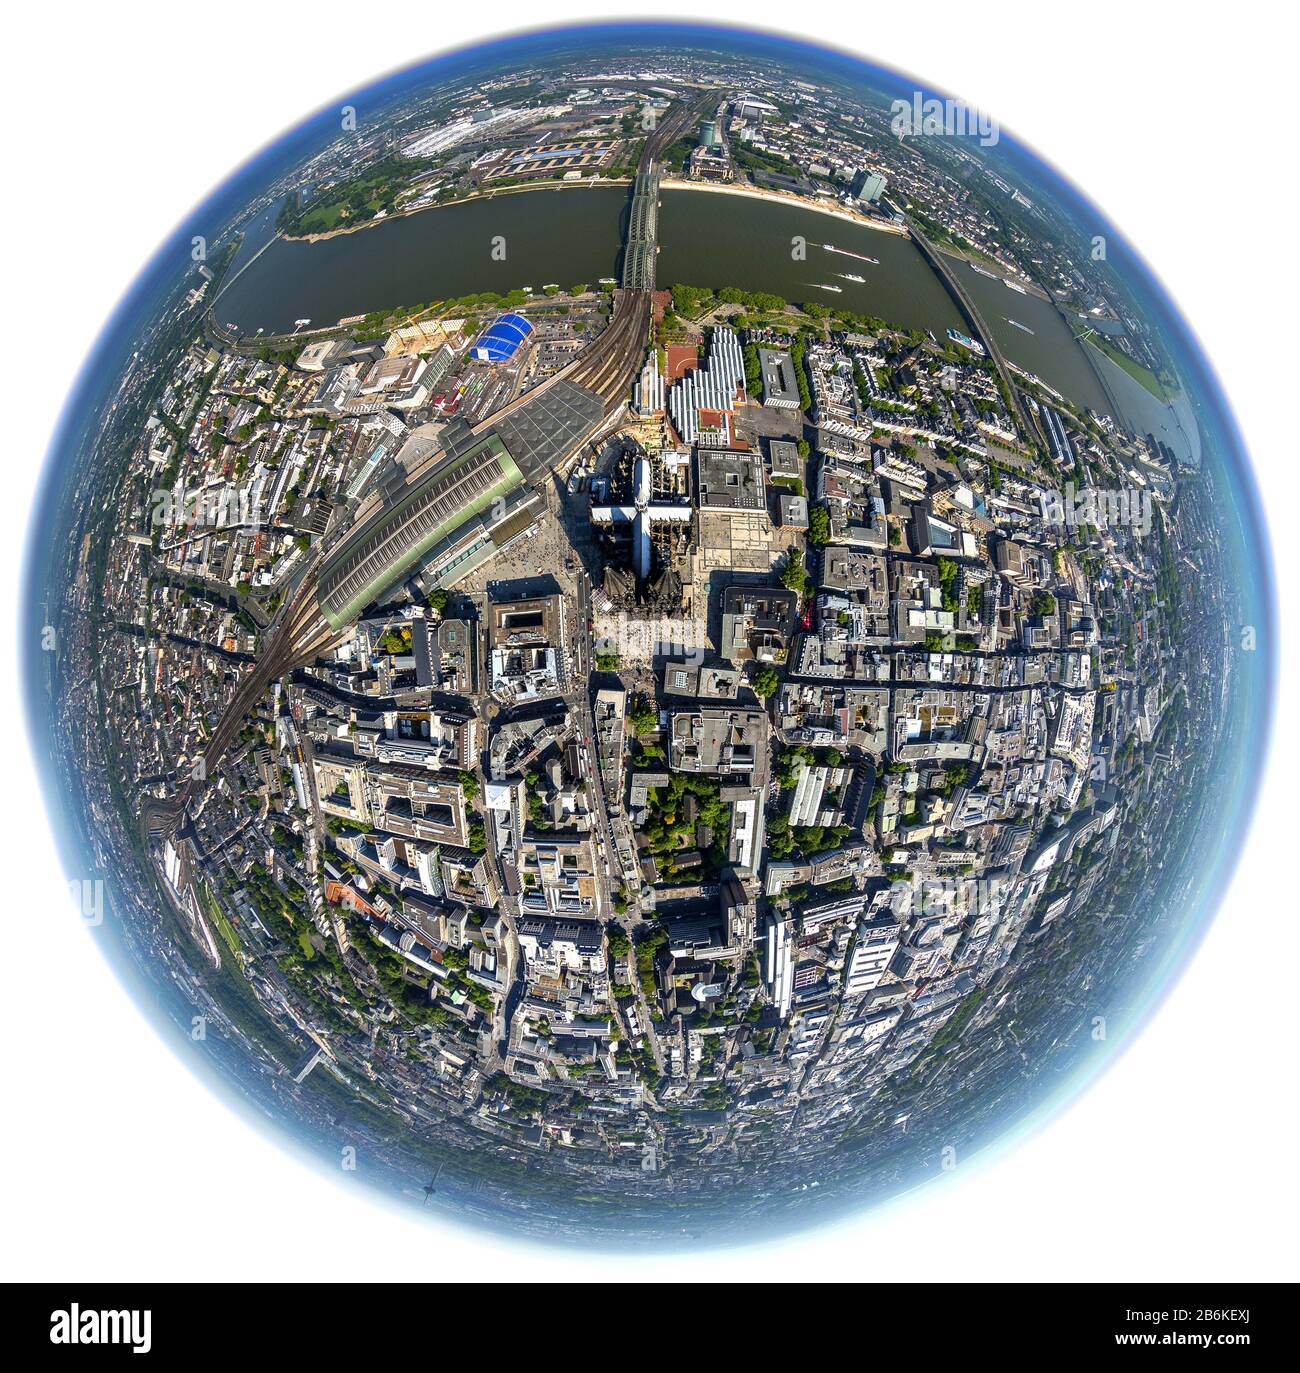 Vieille ville de Cologne au bord du Rhin avec cathédrale, gare principale et sauge Hohenzollern, vue aérienne, Allemagne, Rhénanie-du-Nord-Westphalie, Cologne Banque D'Images